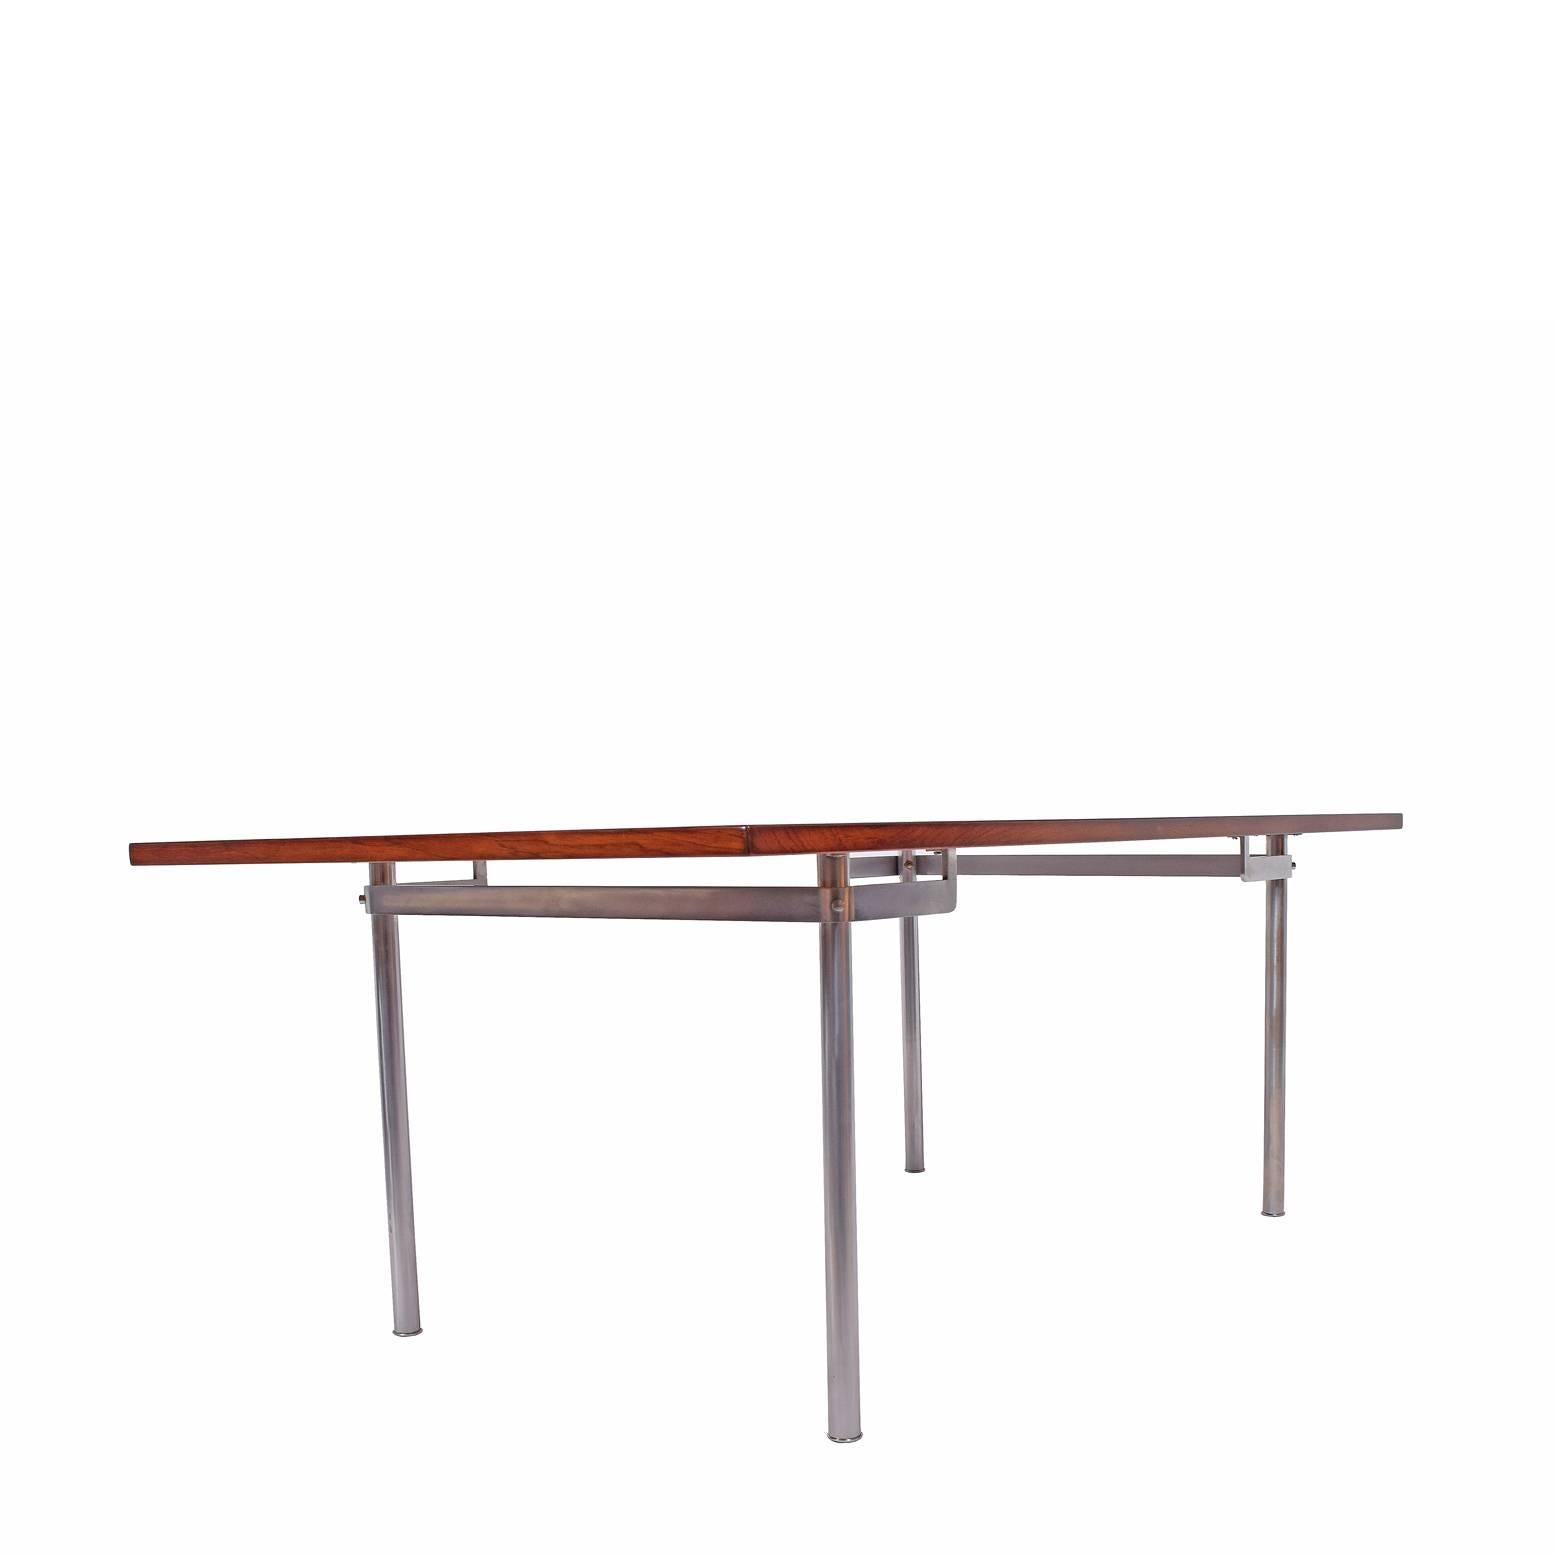 Brazilian rosewood table desk design by Hans Wegner for Andreas Tuck chrome legs sign on the bottom.